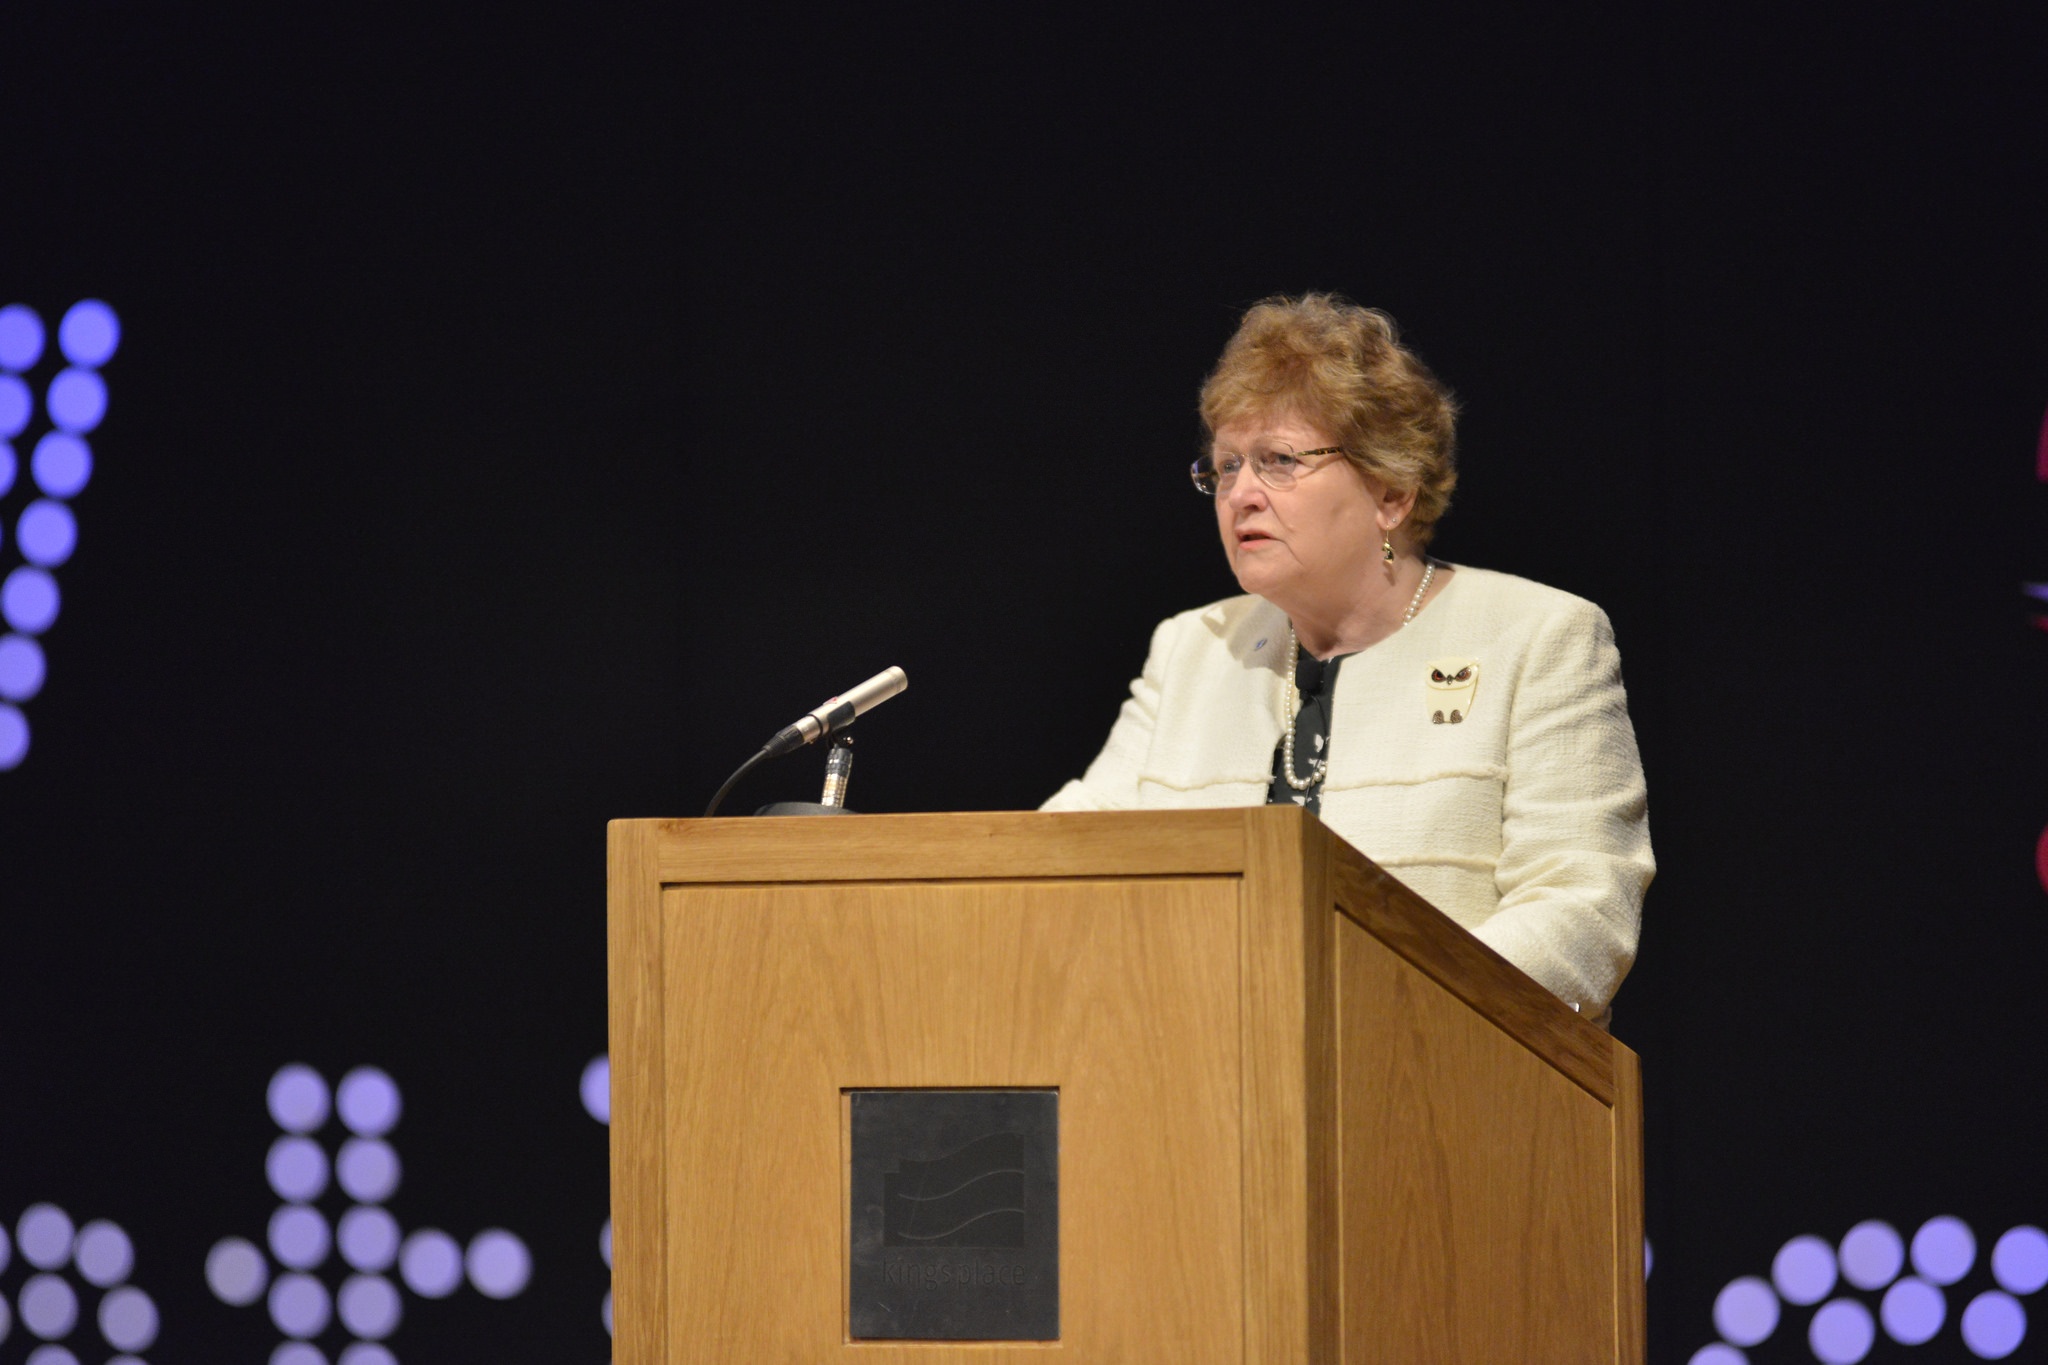 Woman speaking at church podium